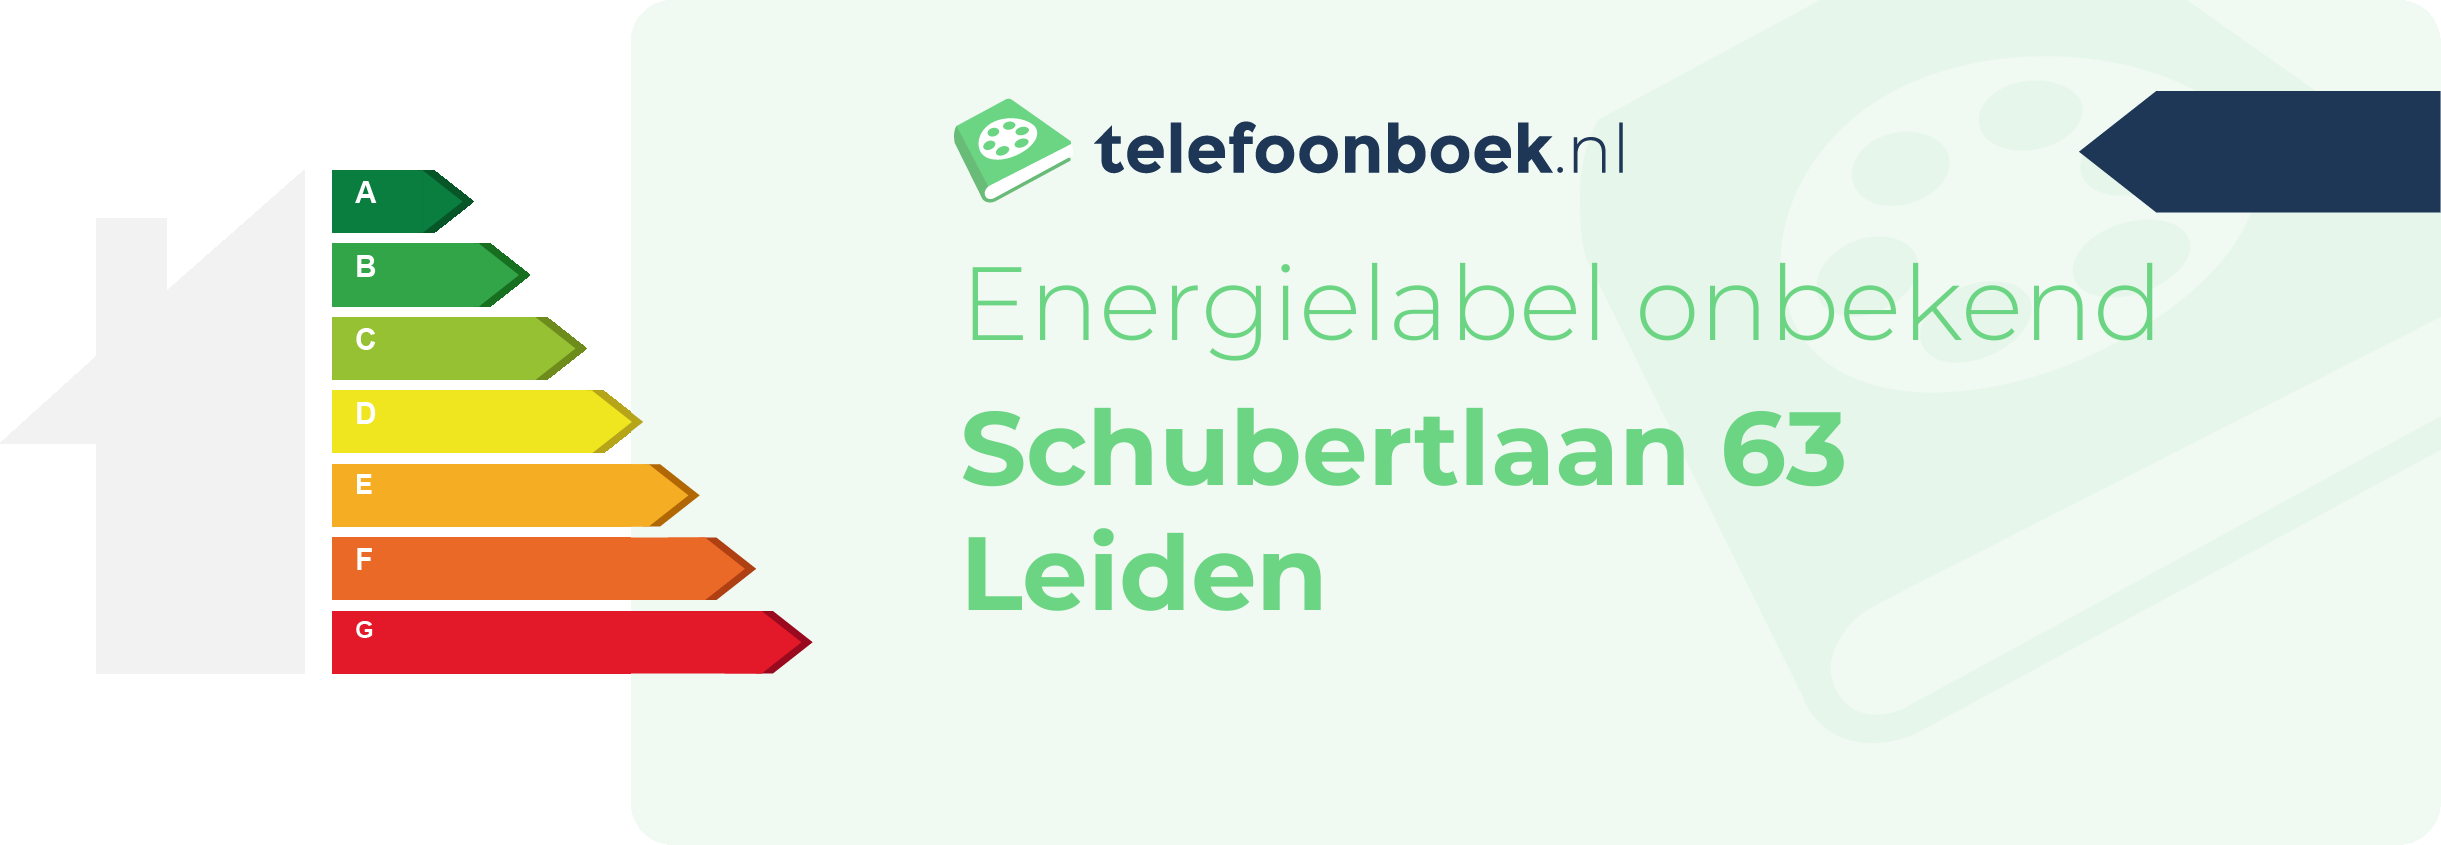 Energielabel Schubertlaan 63 Leiden